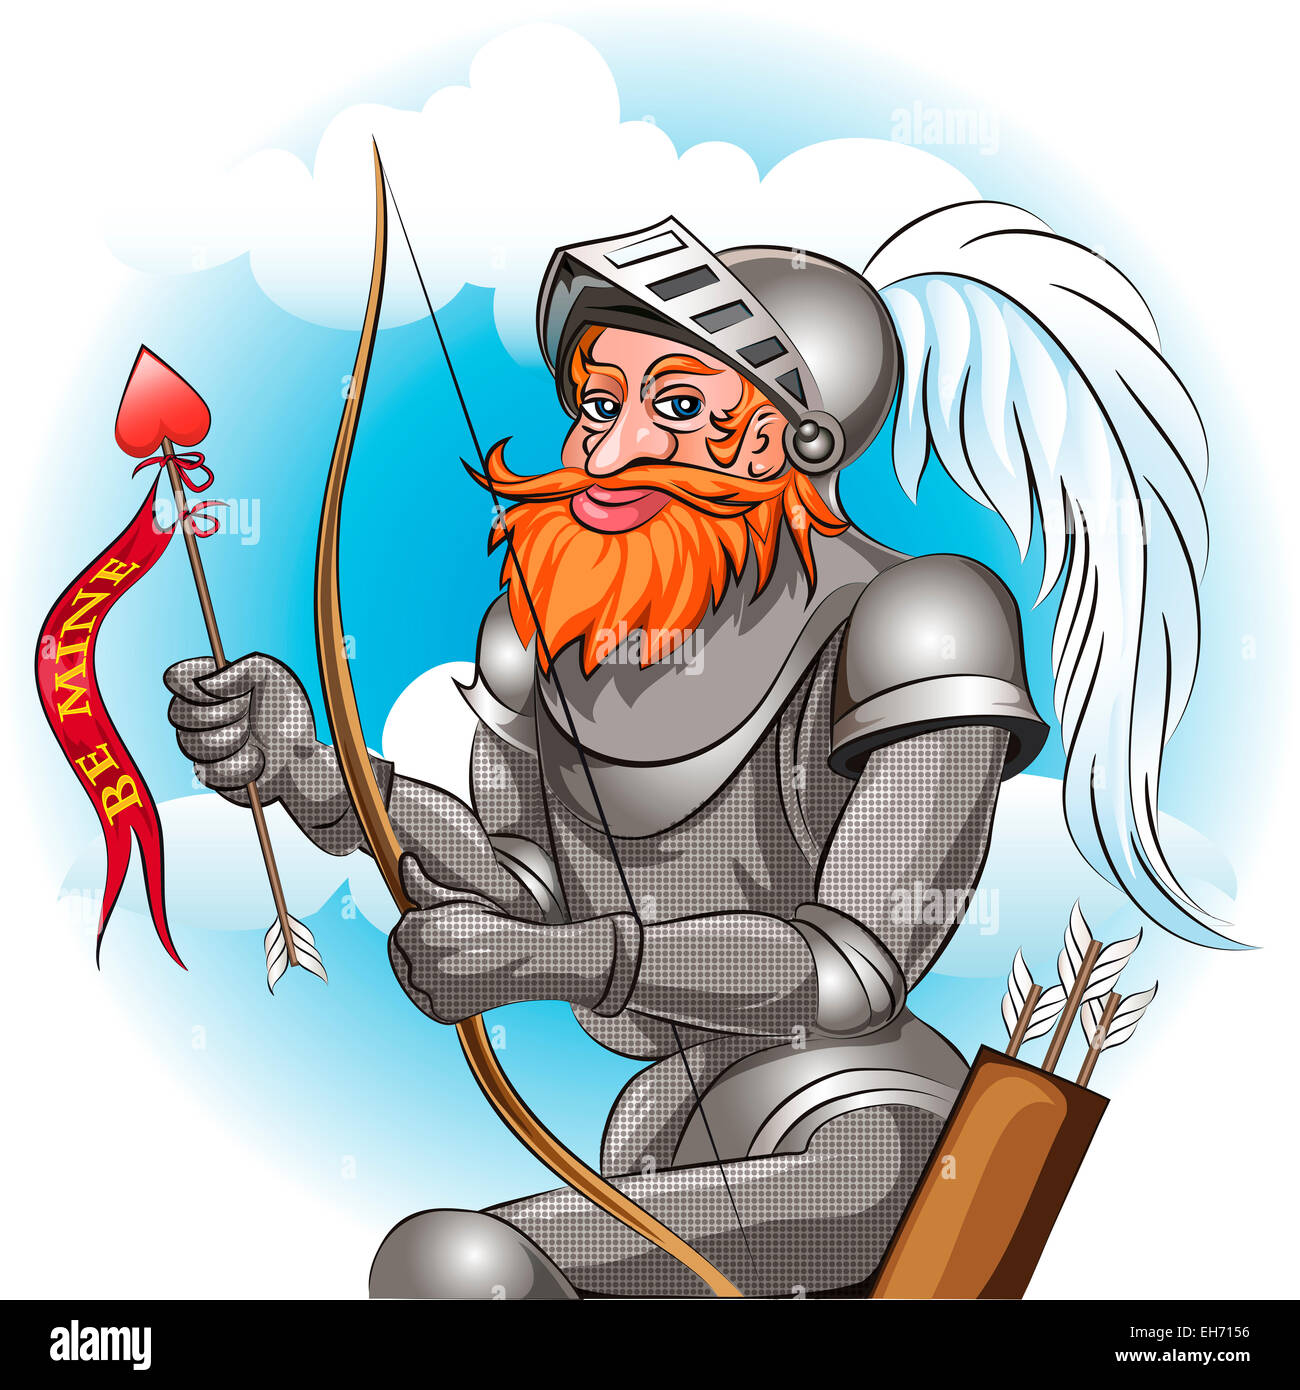 Cavaliere in armatura con arco e frecce pronti ad inviare il messaggio di amore alla sua fanciulla disegnato in stile cartoon Foto Stock